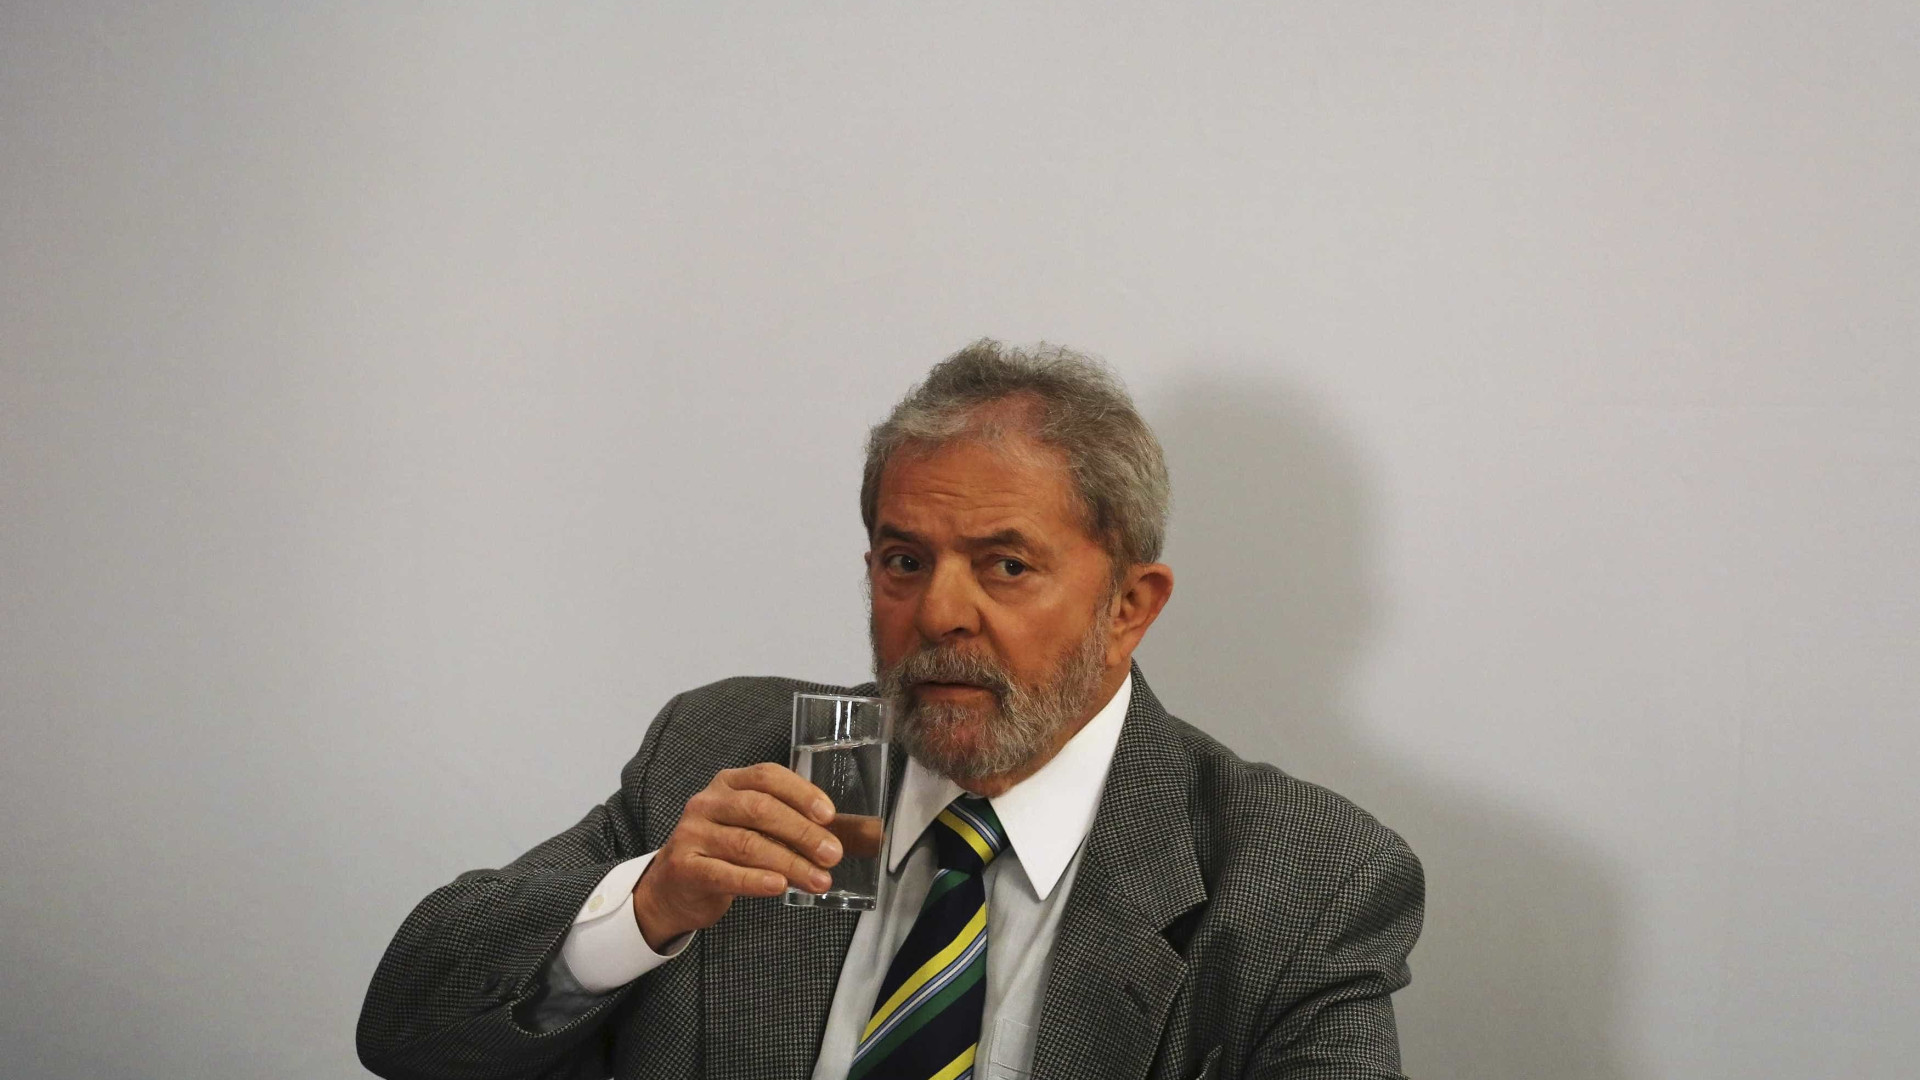 Para advogado de Lula, acusação é 'peça de ficção'